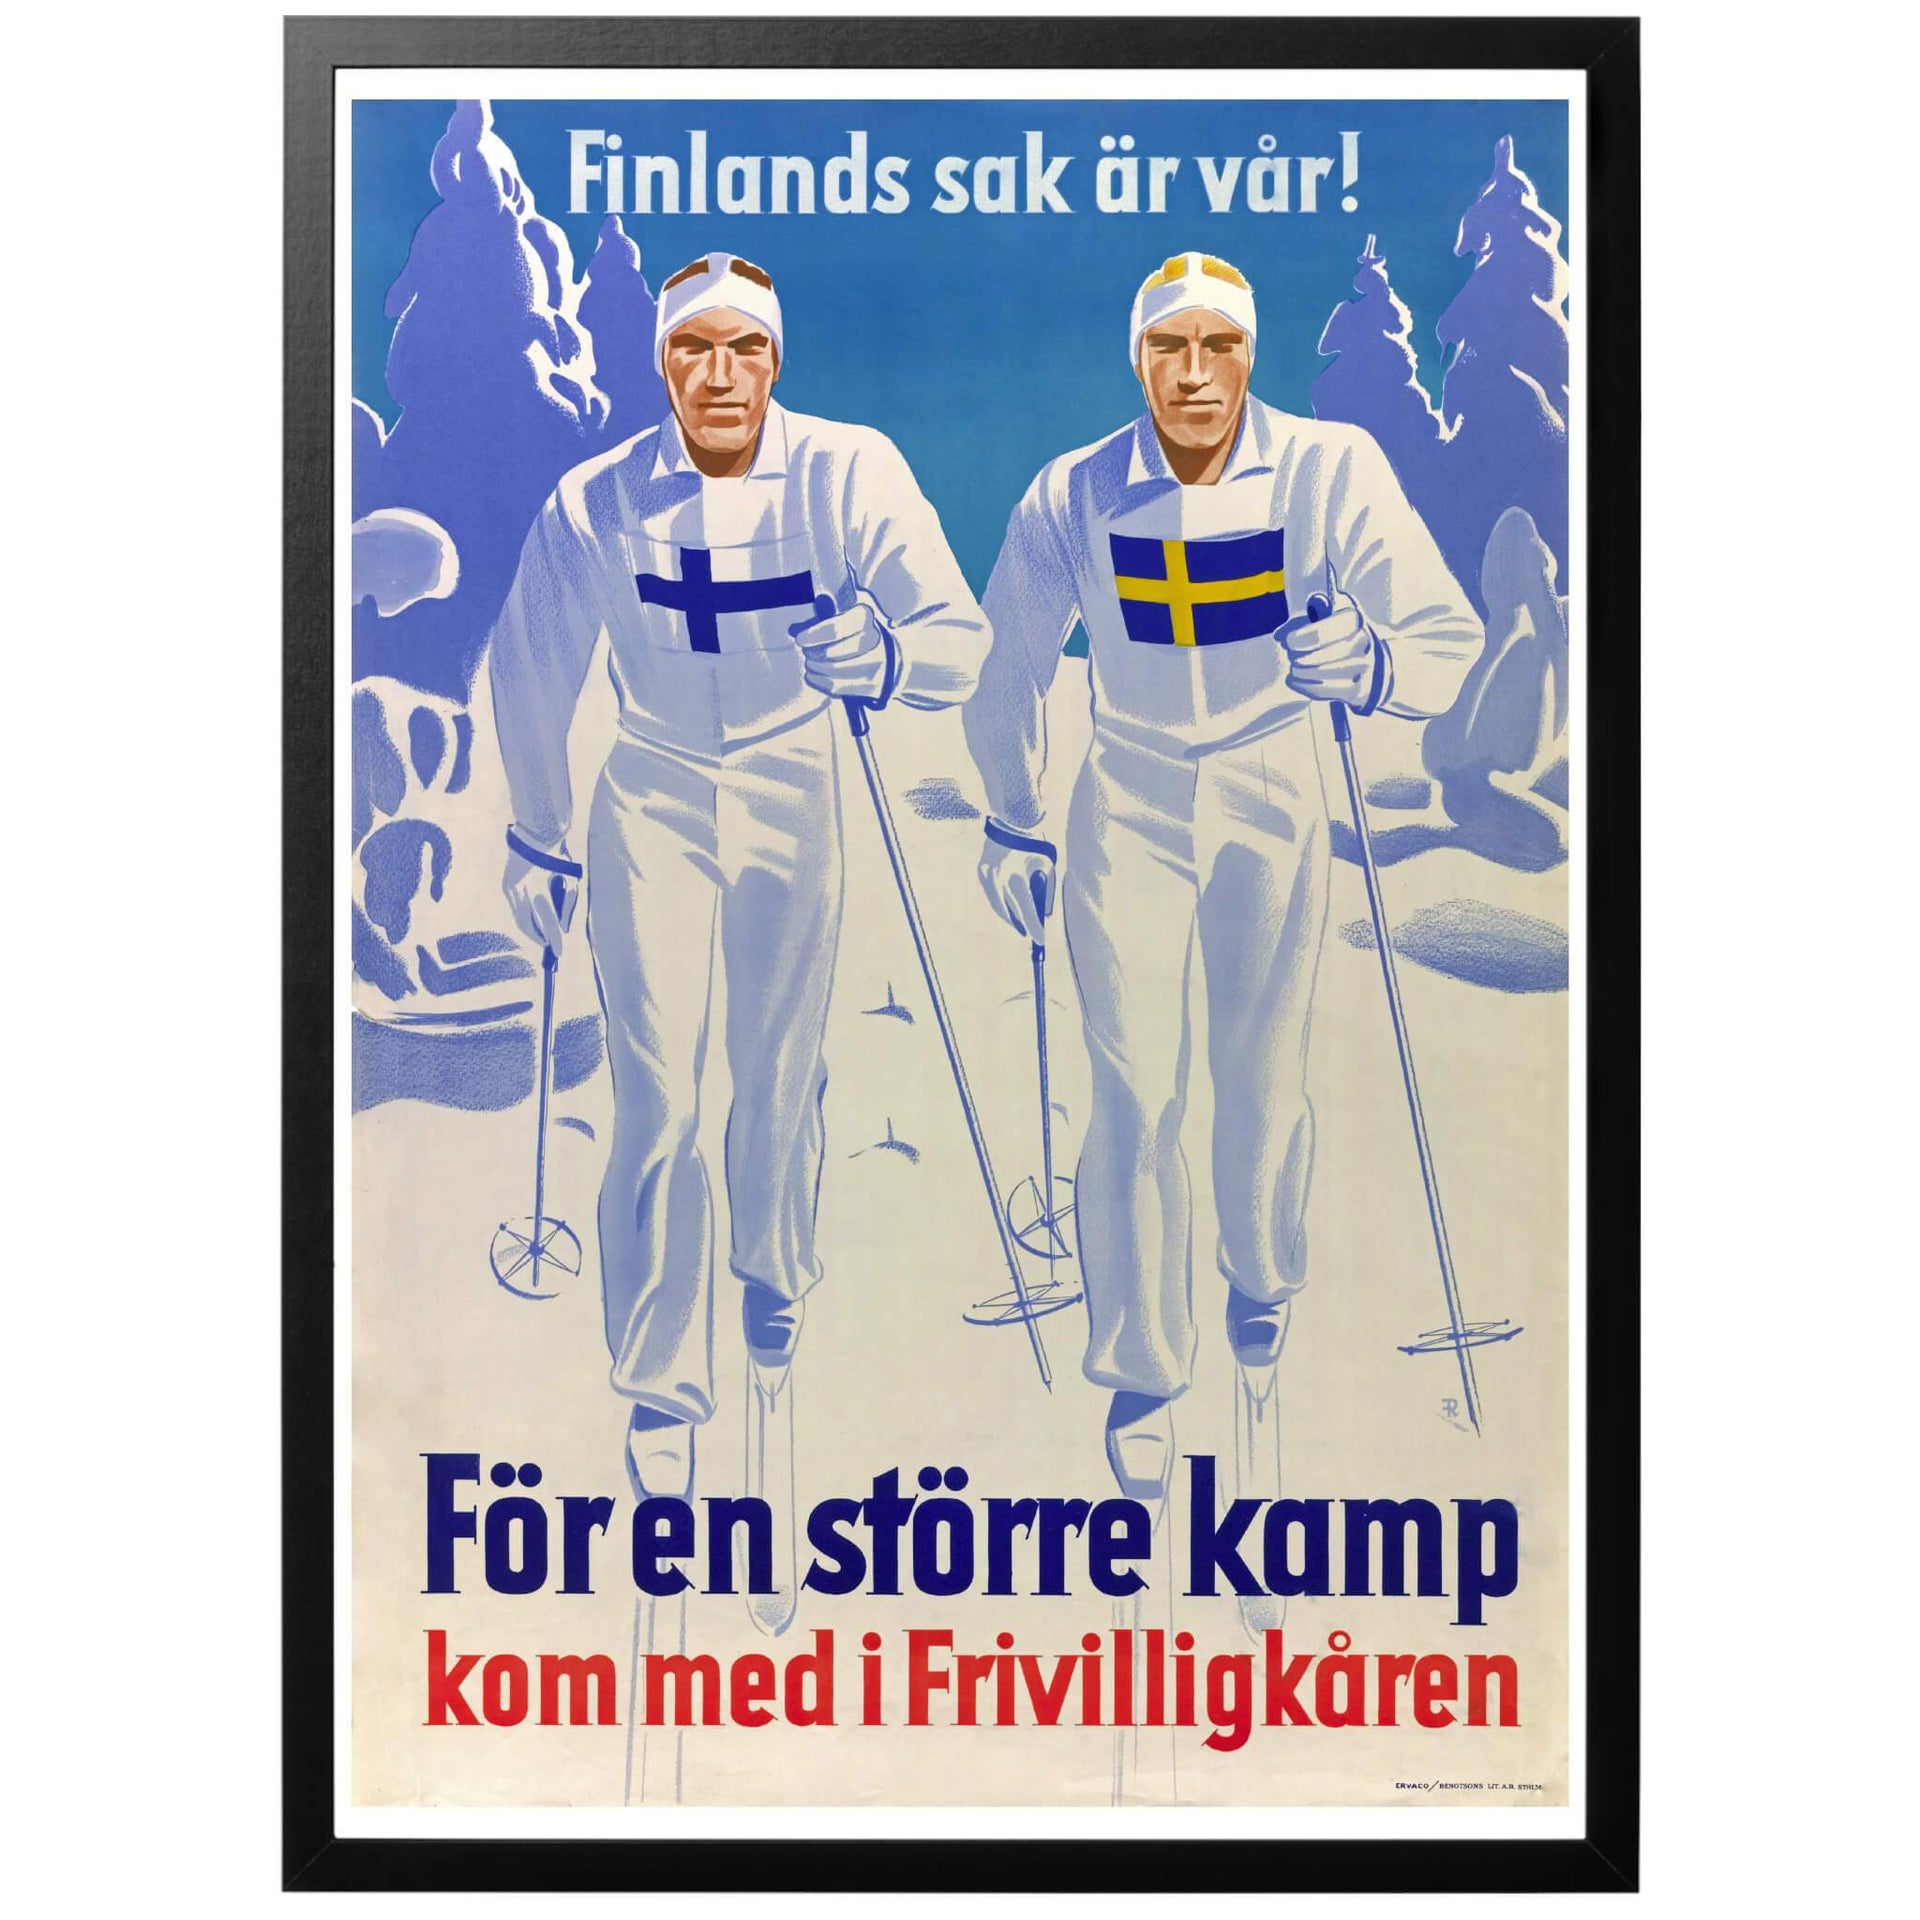 Svensk propagandaaffisch från 1940 som uppmanar den svenska befolkningen att bistå sitt brödrafolk i öster. Totalt kom ca 8000 svenskar att delta i det finska vinterkriget.